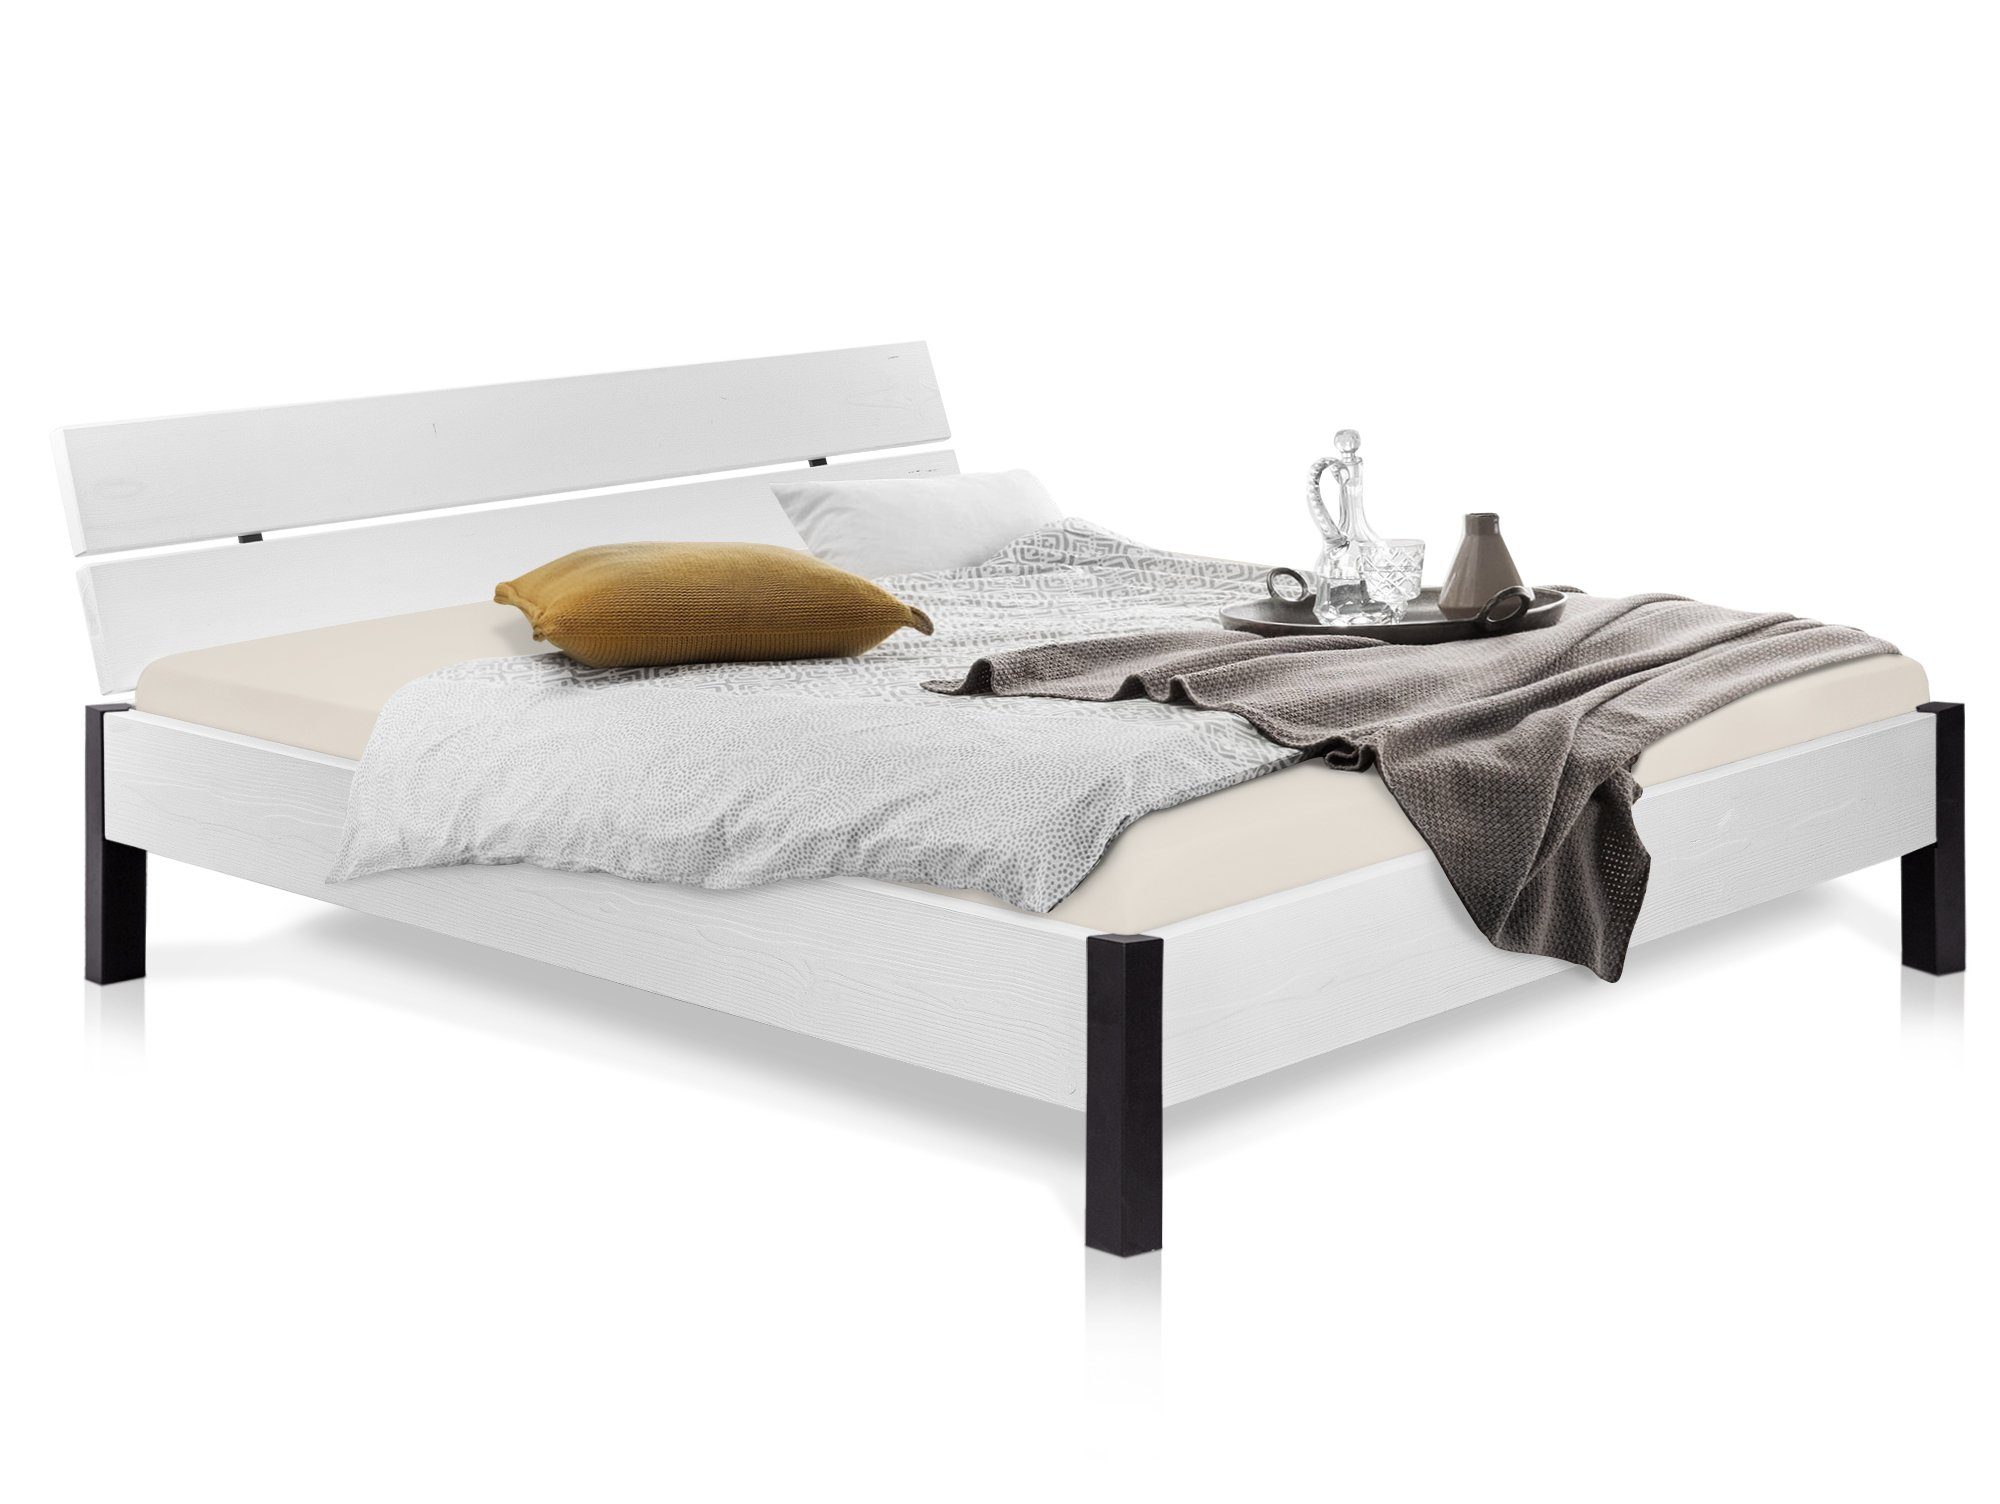 Moebel-Eins Massivholzbett, LUKY Bett Metallfuß, mit Kopfteil, Material  Massivholz, Fichte weiß lackiert online kaufen | OTTO